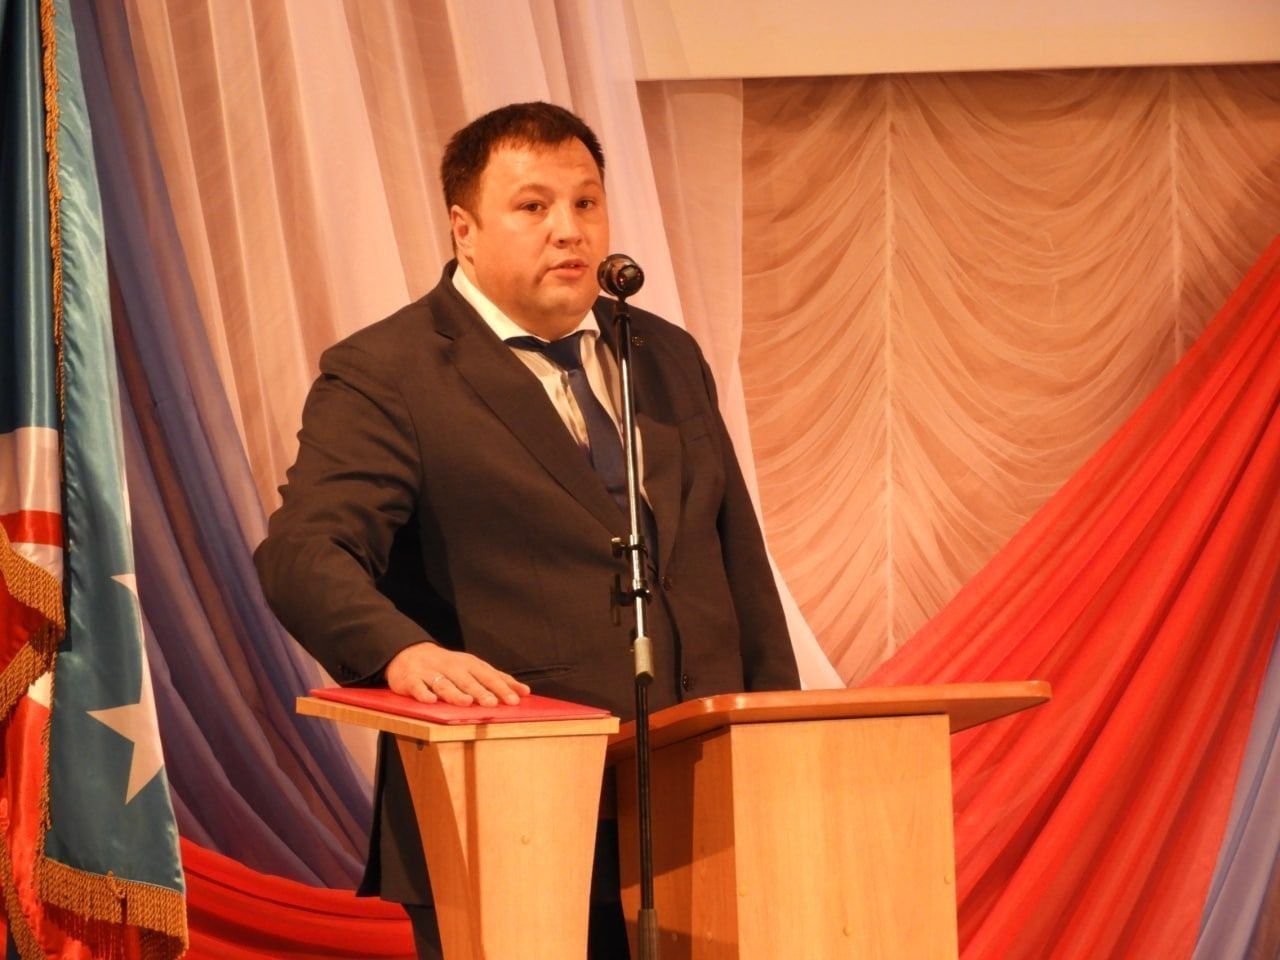 “Не для протокола”: мэр Волчанска назначен главой Северного округа. Сам Вервейн говорит, что не в курсе